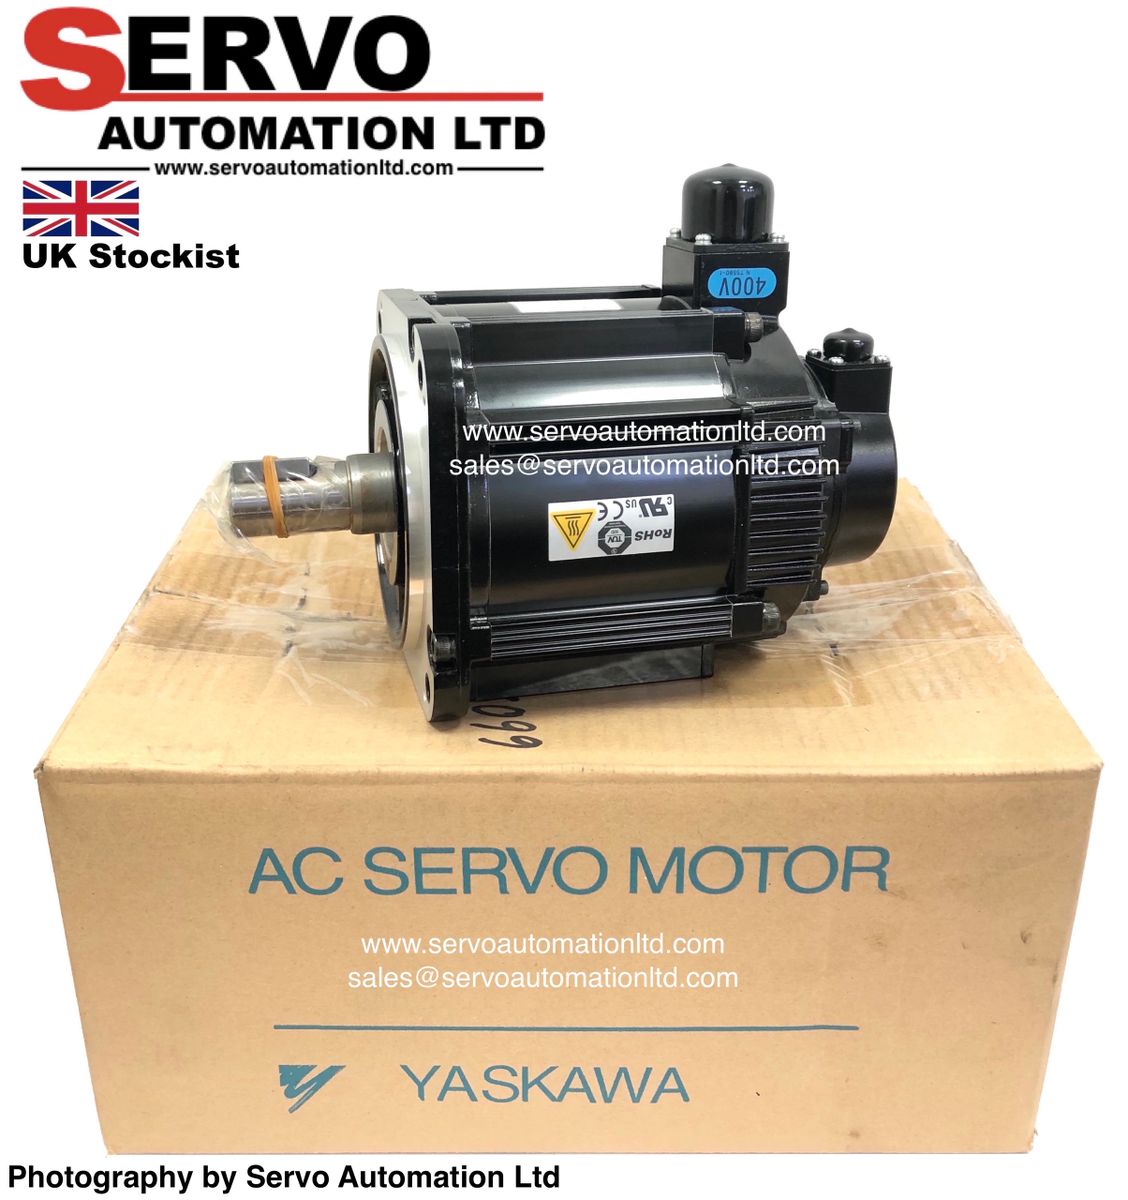 SGMGV-20D3A61 (NEW) Yaskawa Electric AC Servo Motor 1.8kW 400v SGMGV20D3A61